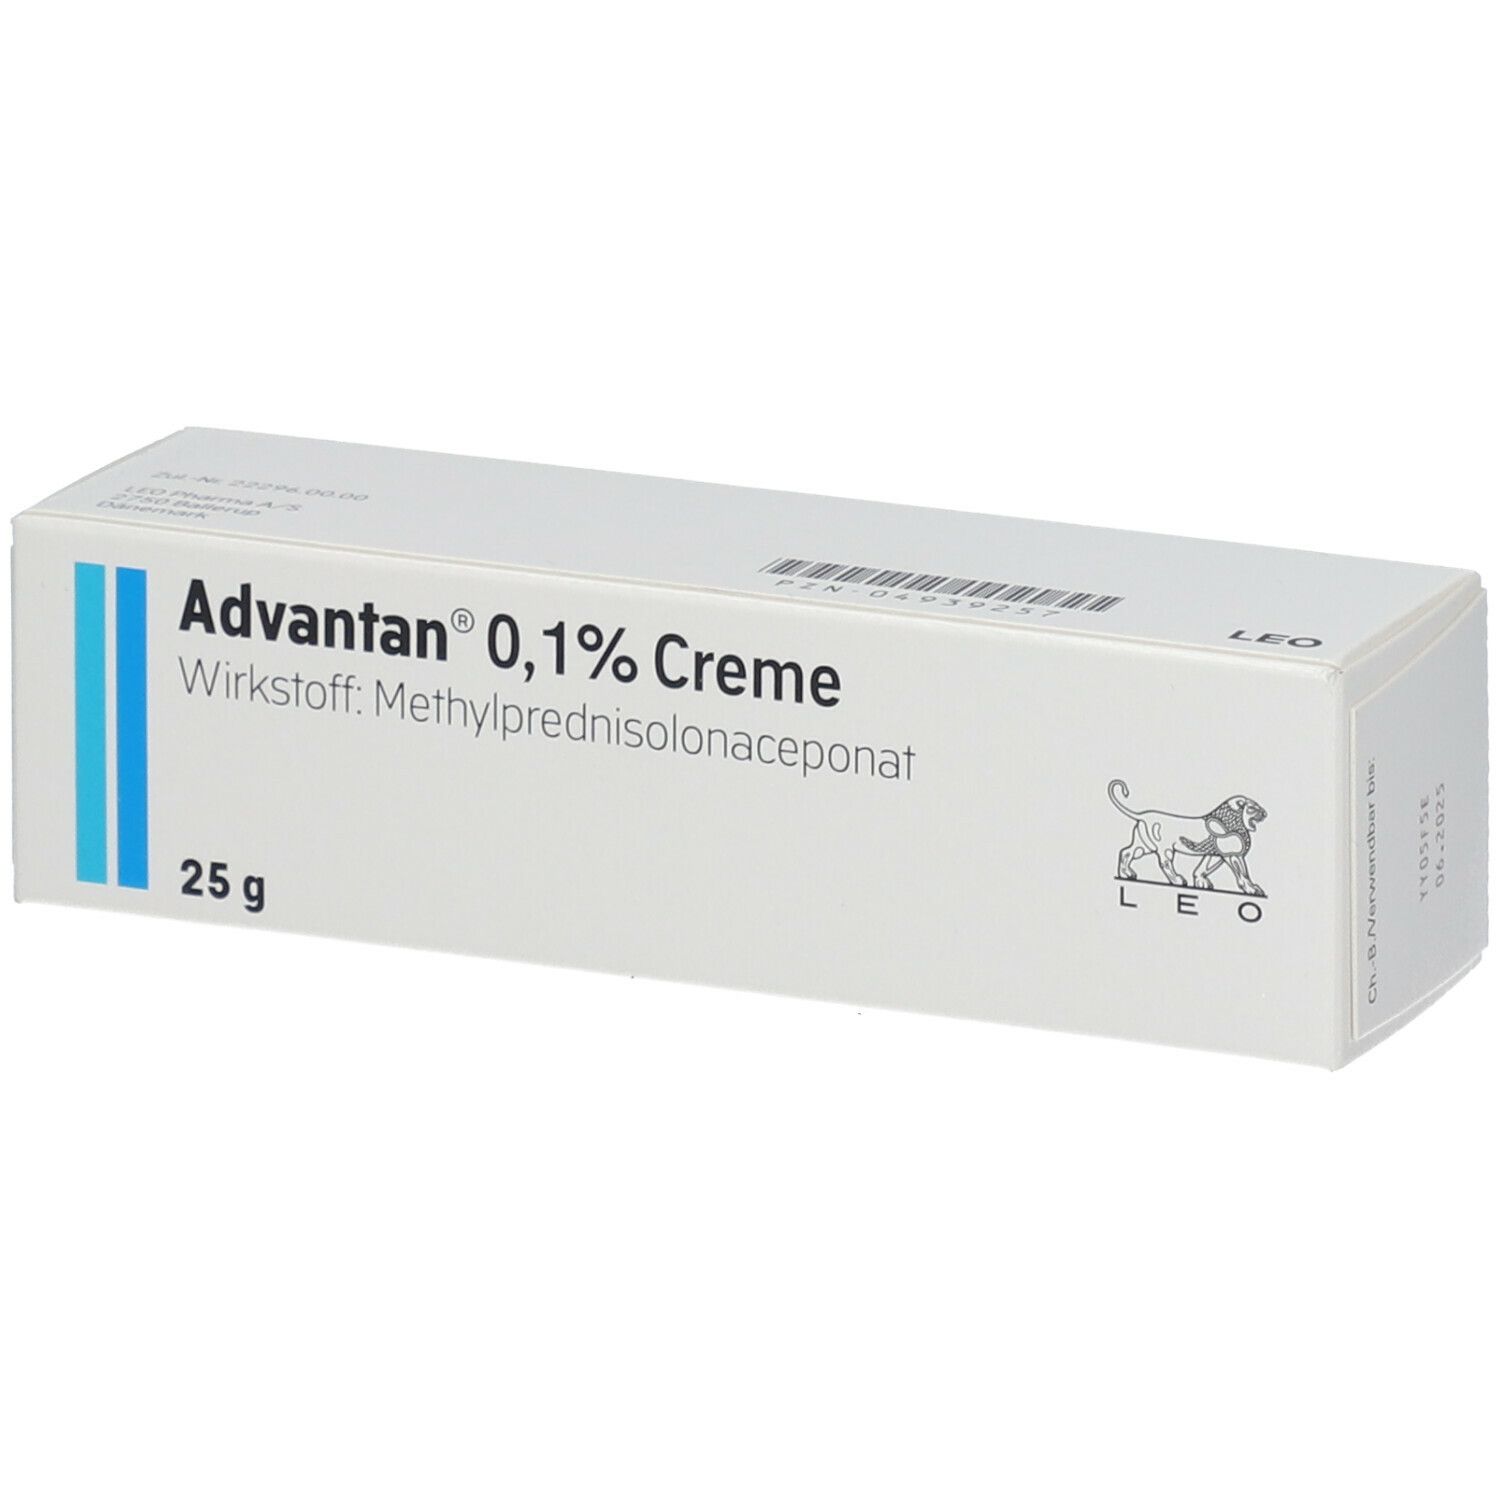 Advantan® 0,1% Creme